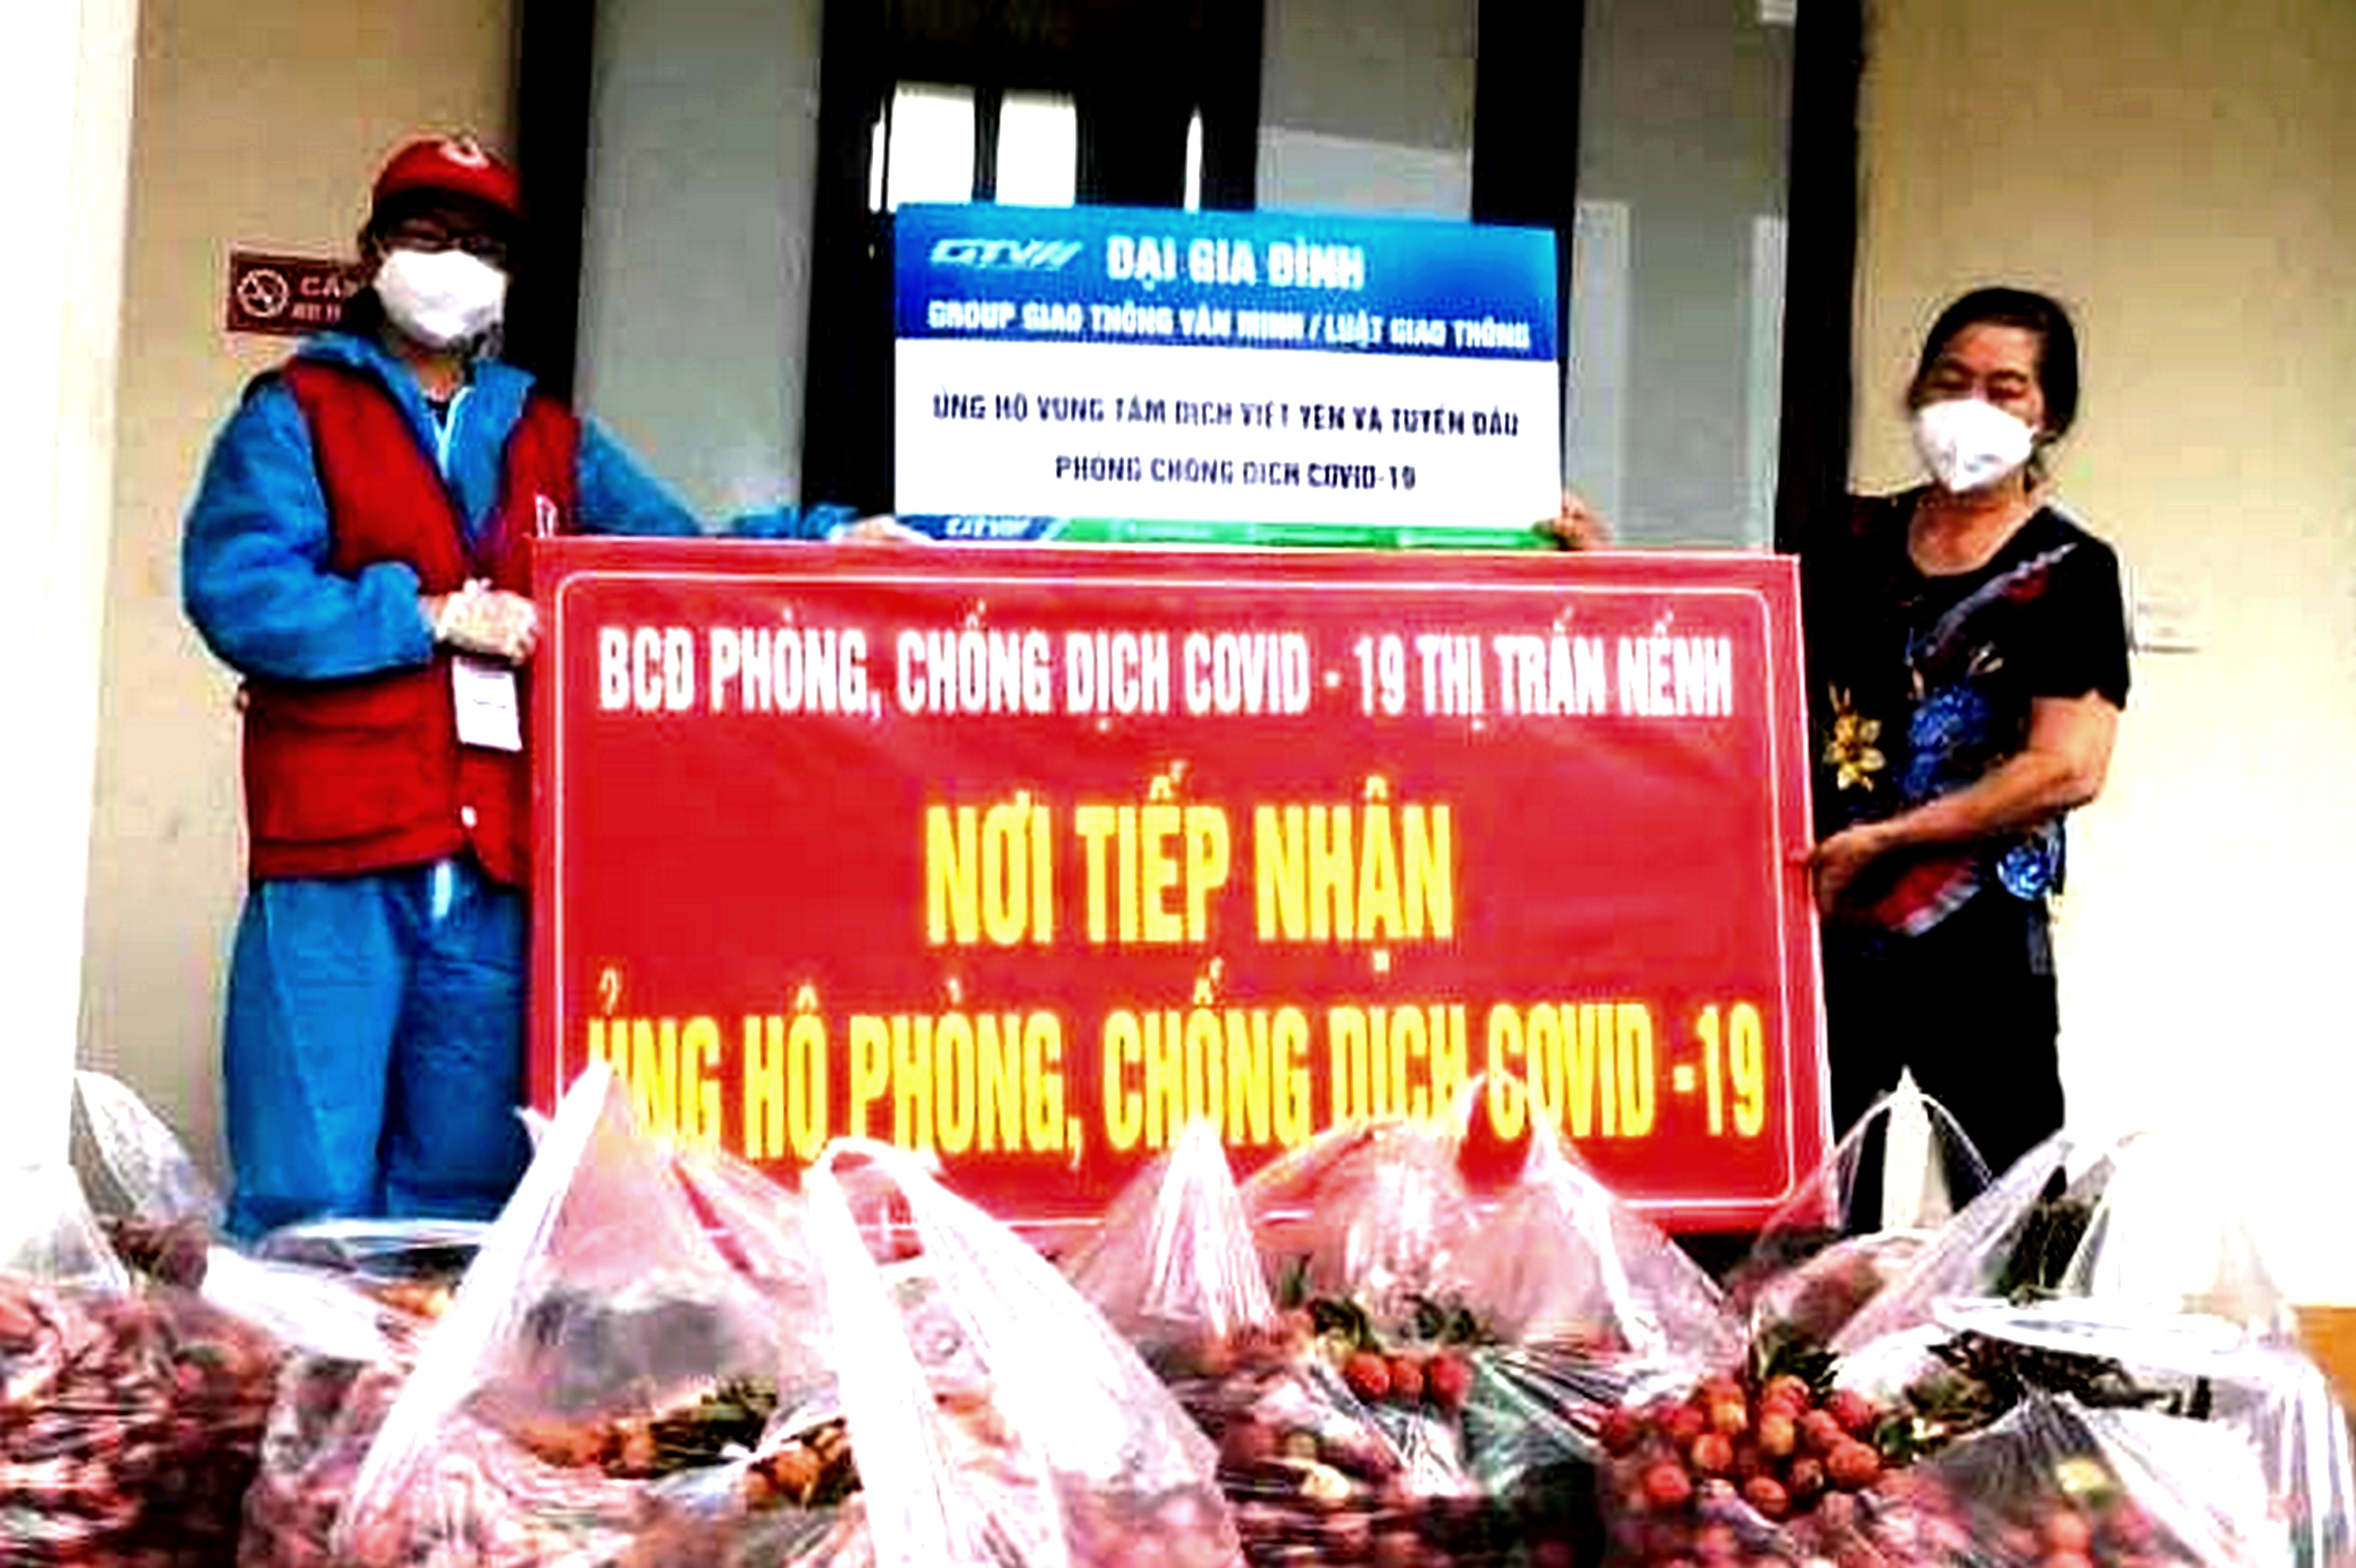 Bắc Giang: Đội Chữ thập đỏ xung kích huyện Việt Yên trên tuyến đầu chống dịch Covid - 19